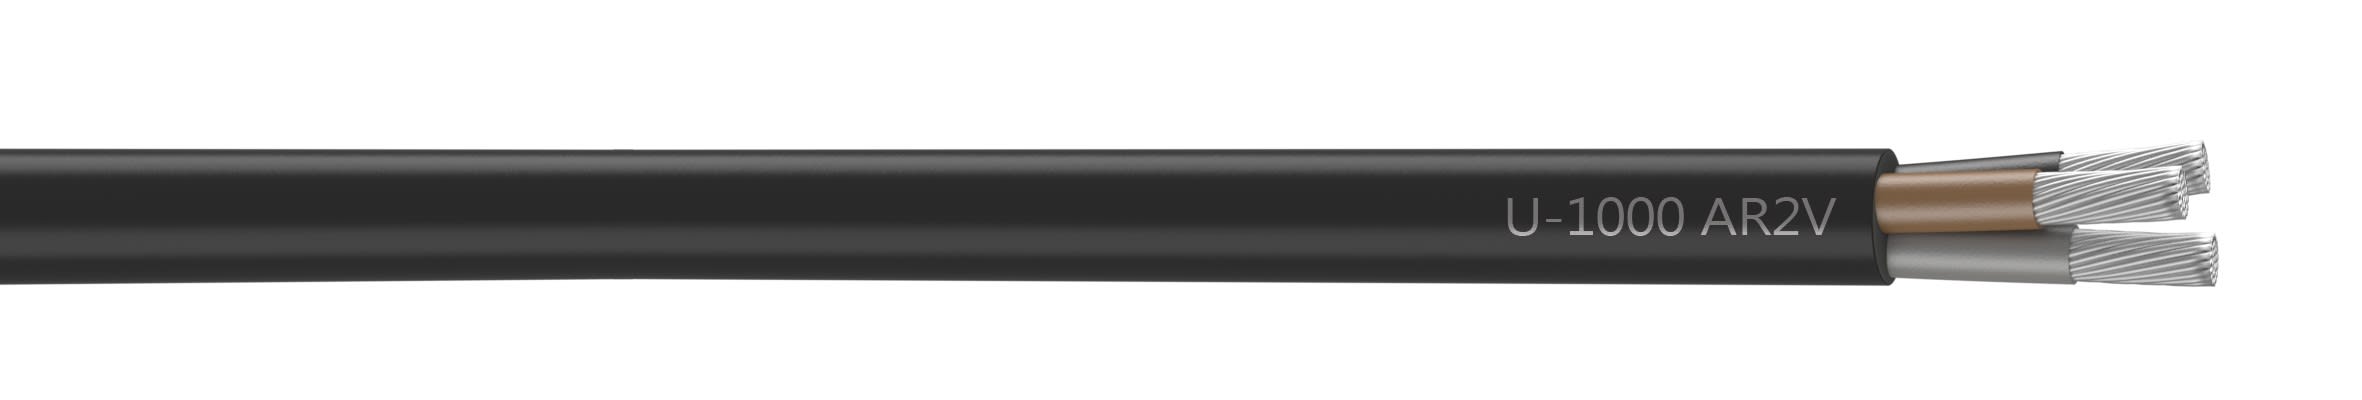 Nexans - Câble rigide U-1000 AR2V aluminium 3x150 longueur à la coupe